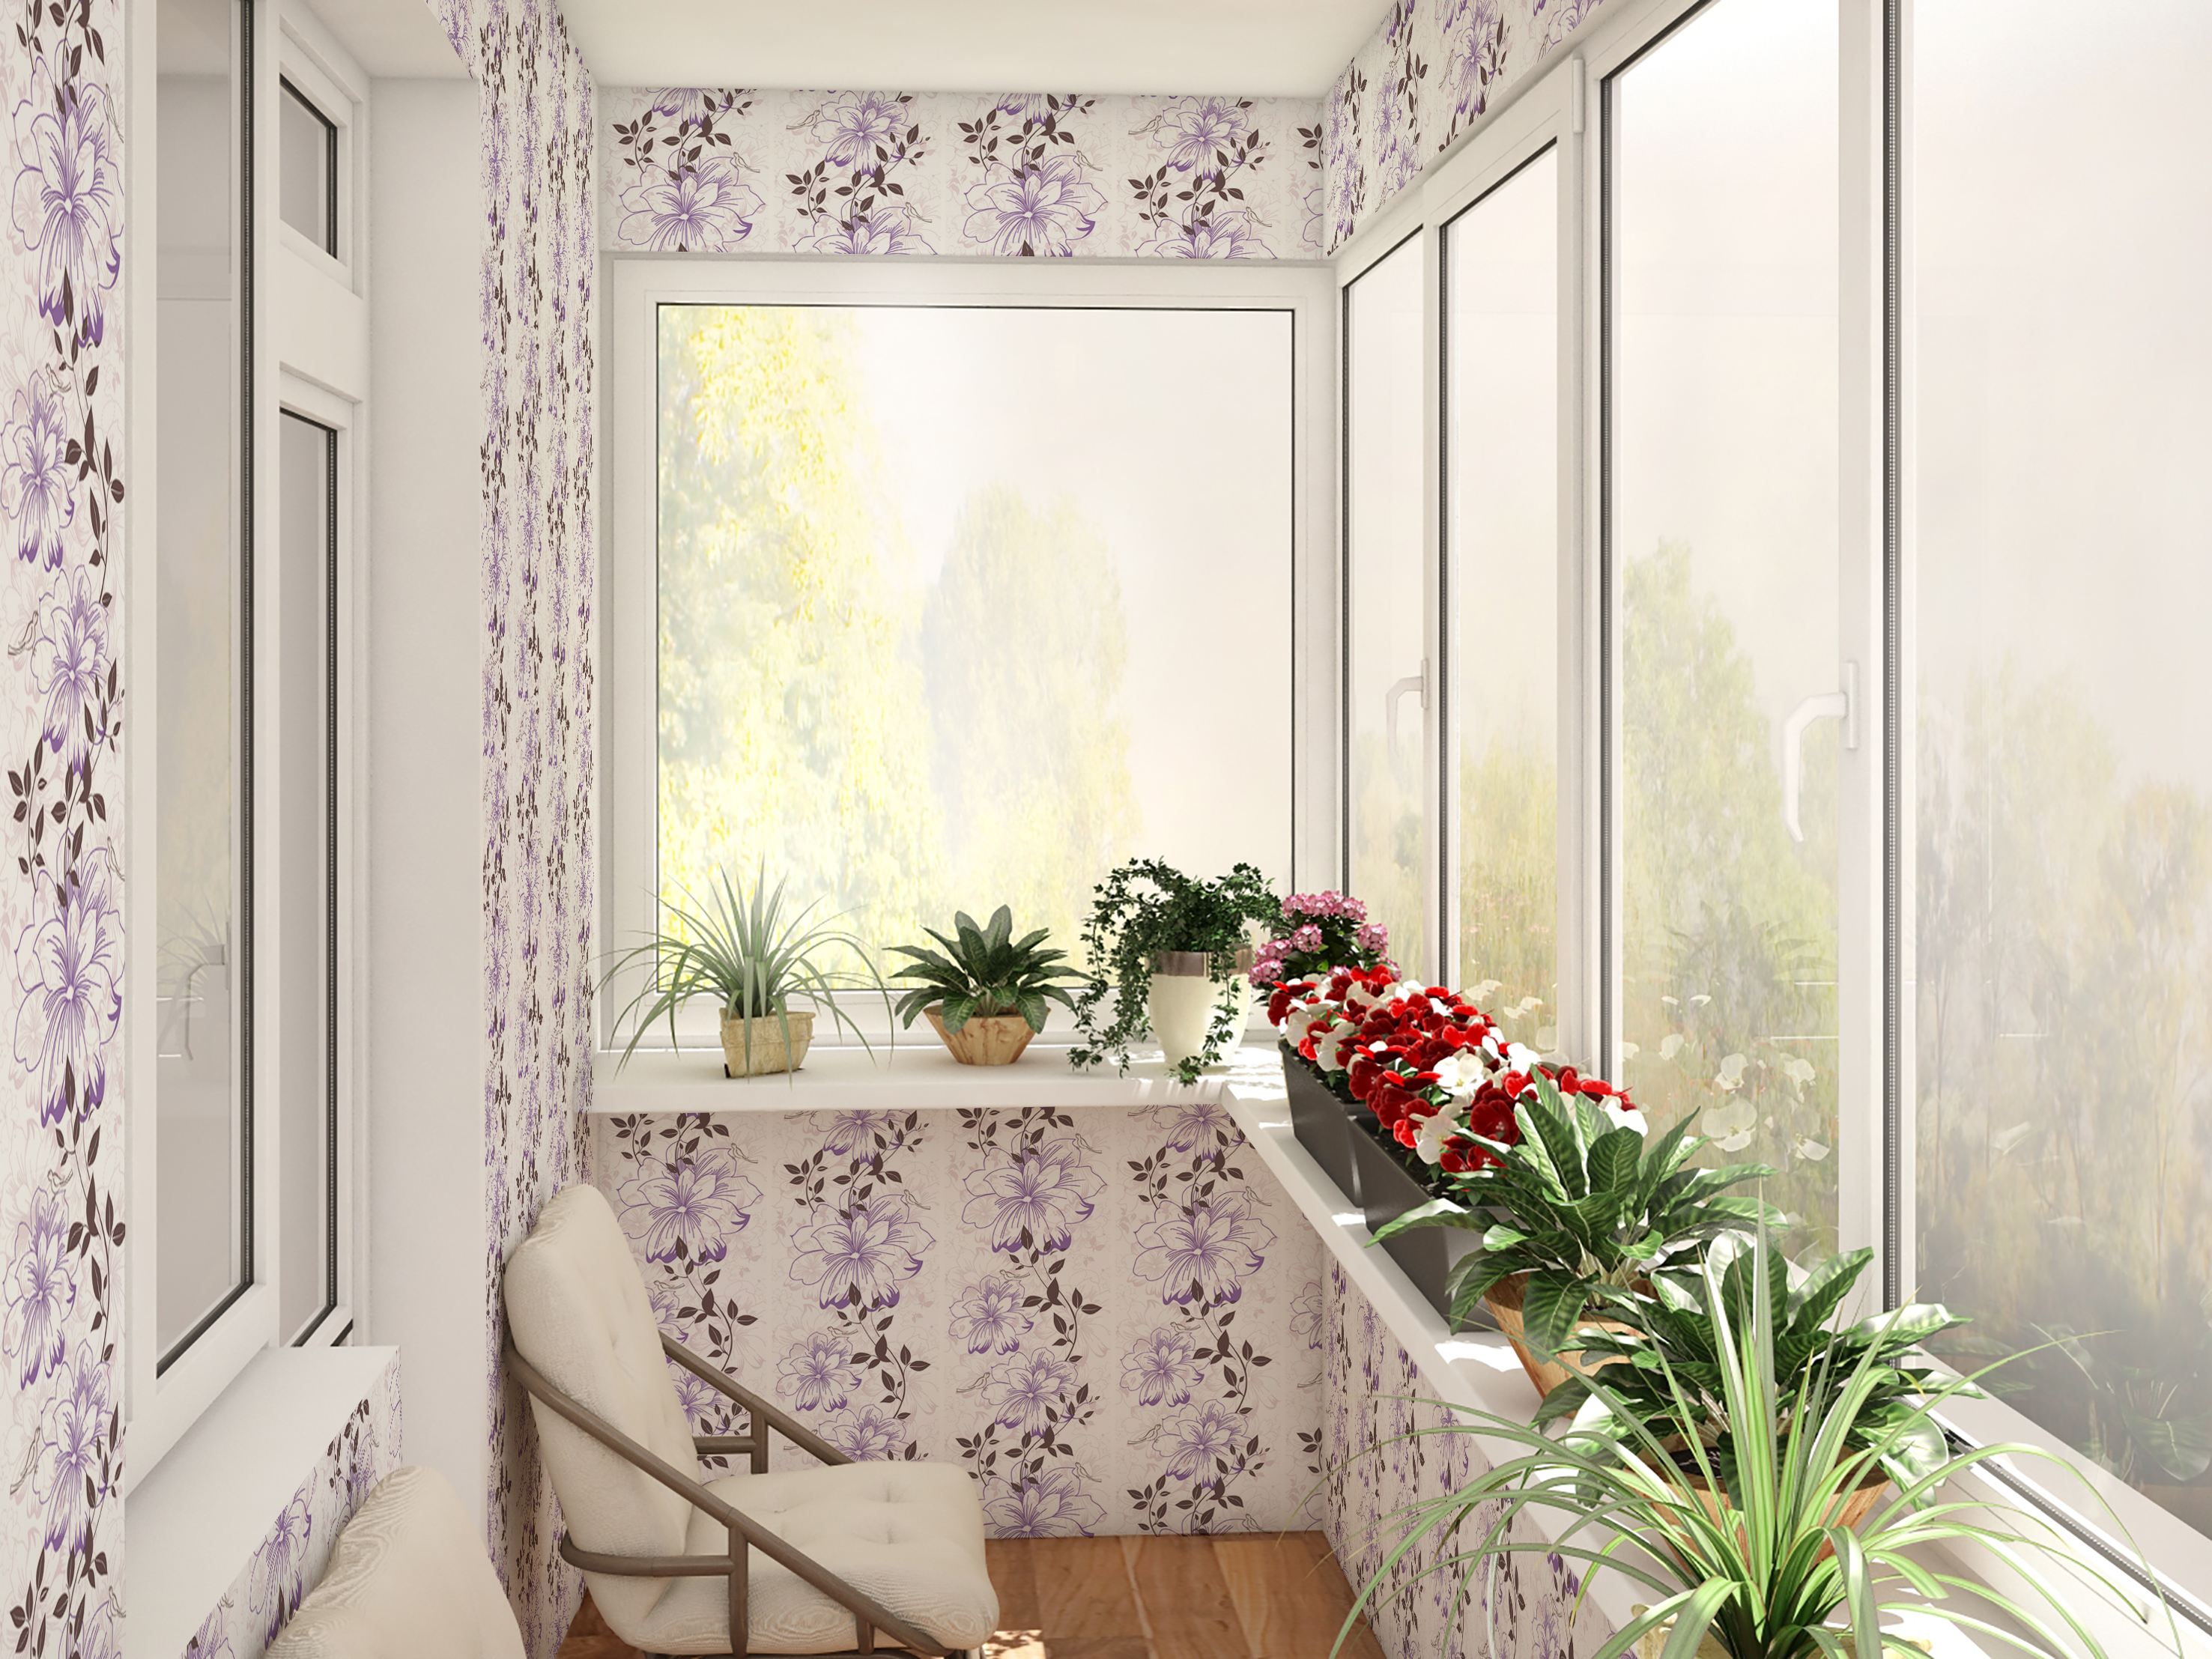 Северный балкон. Полубалкон полулоджия. Красивый балкон. Застекленный балкон с цветами. Остекленный балкон с цветами.